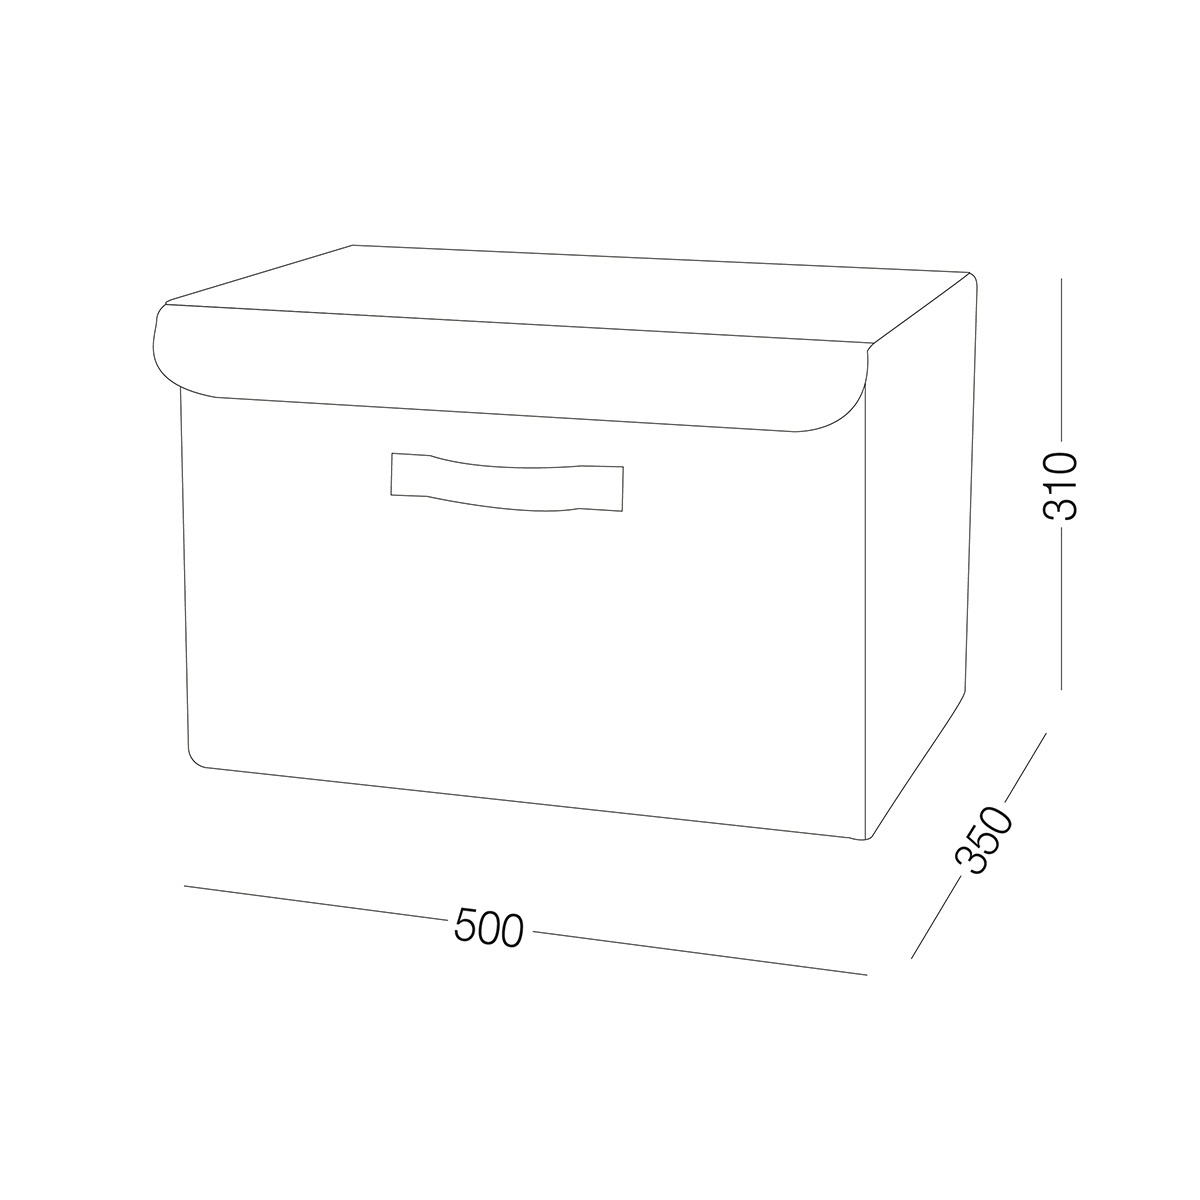 Ящик для хранения с крышкой MVM тканевый серый 310x350x500 TH-07 XL GRAY